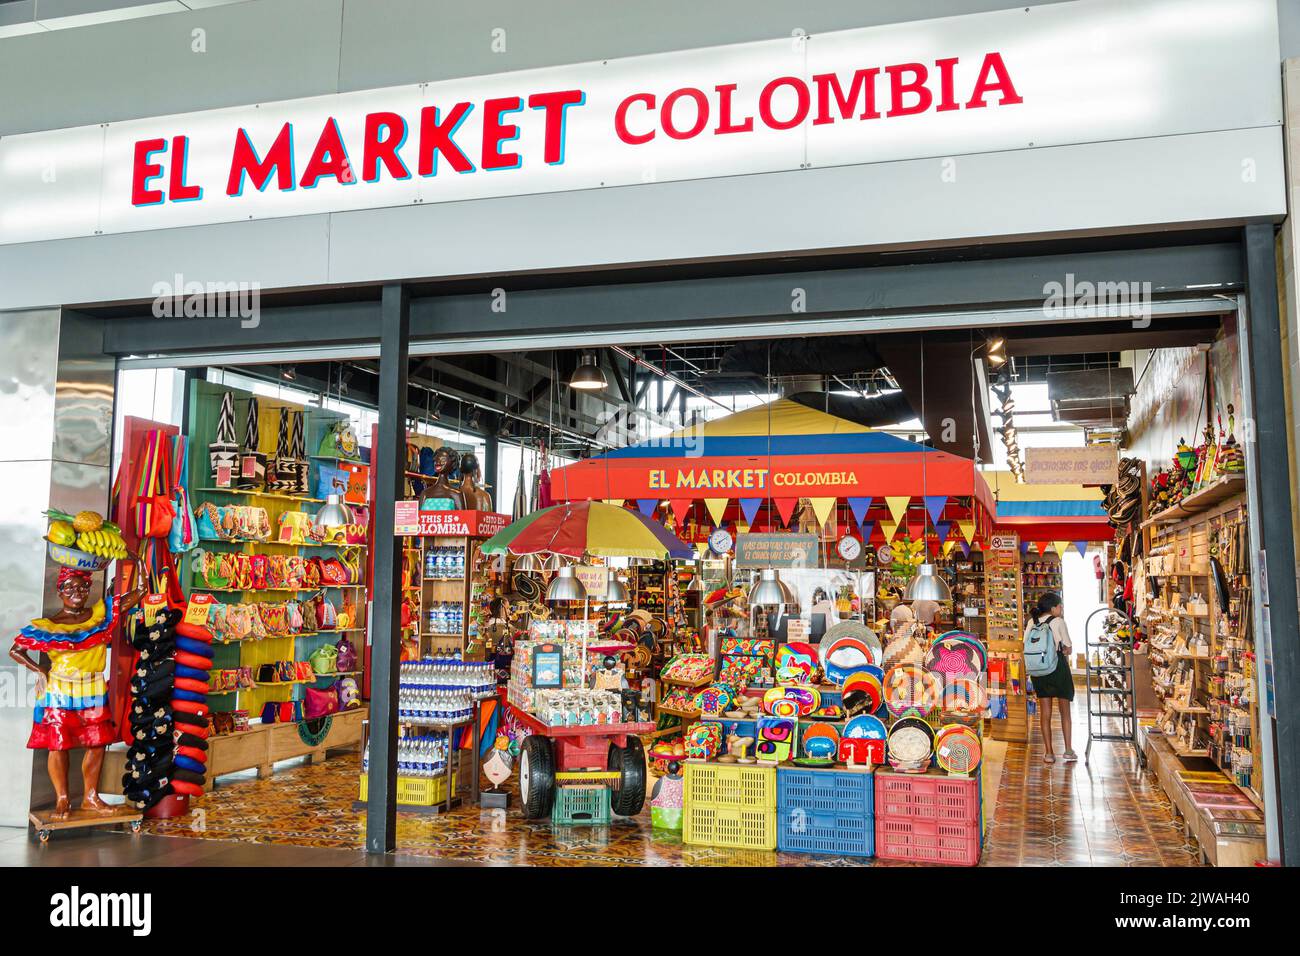 Bogota Colombia,El Dorado International Airport Aeropuerto Internacional El Dorado terminal concourse gate area inside interior,store stores business Stock Photo